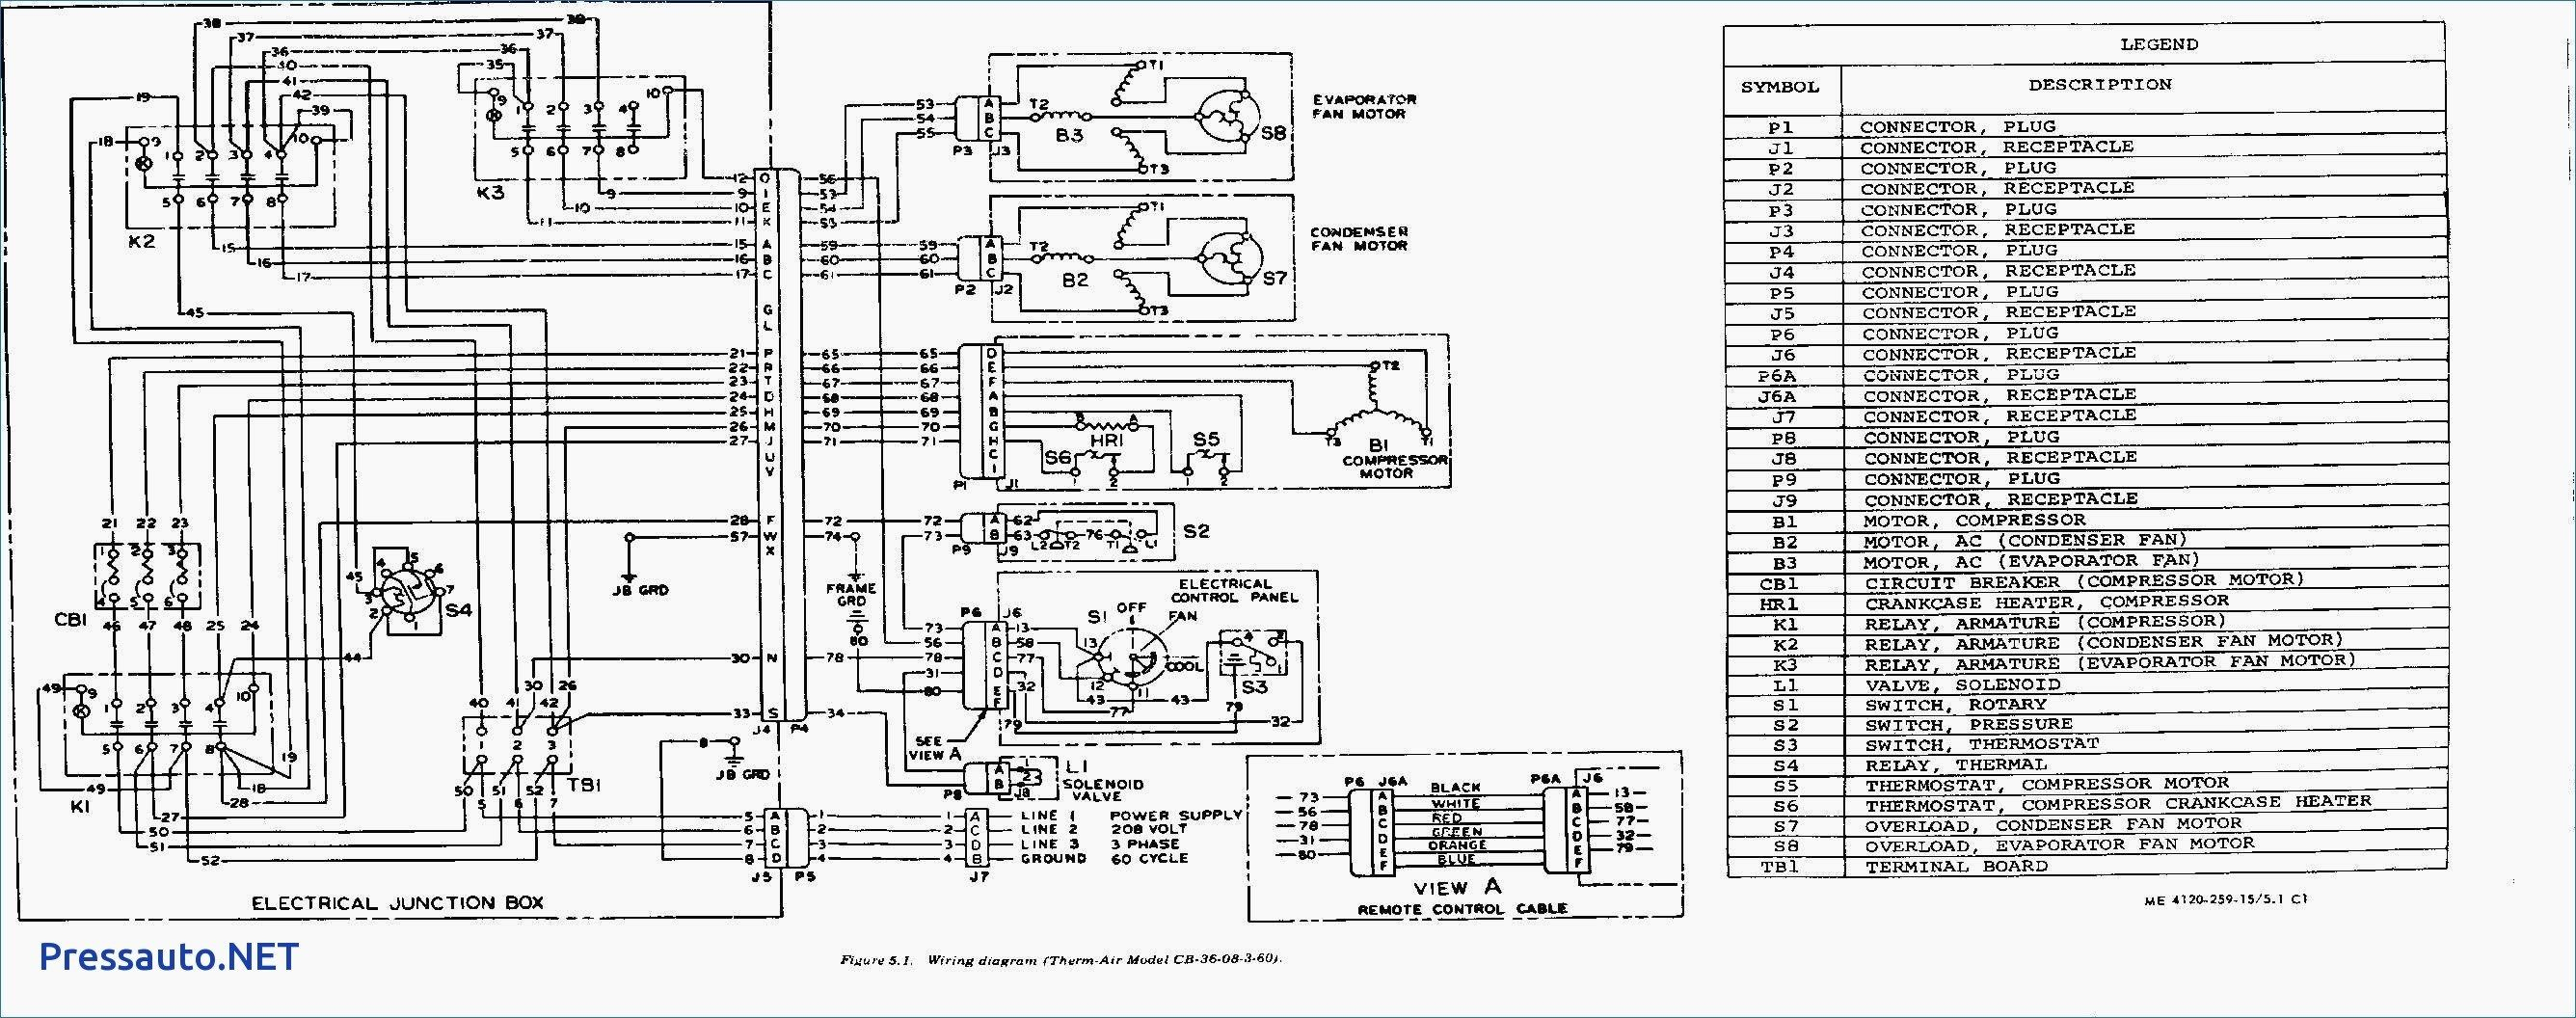 Trane Rooftop Unit Wiring Diagram | Schematic Diagram - Trane Rooftop Unit Wiring Diagram